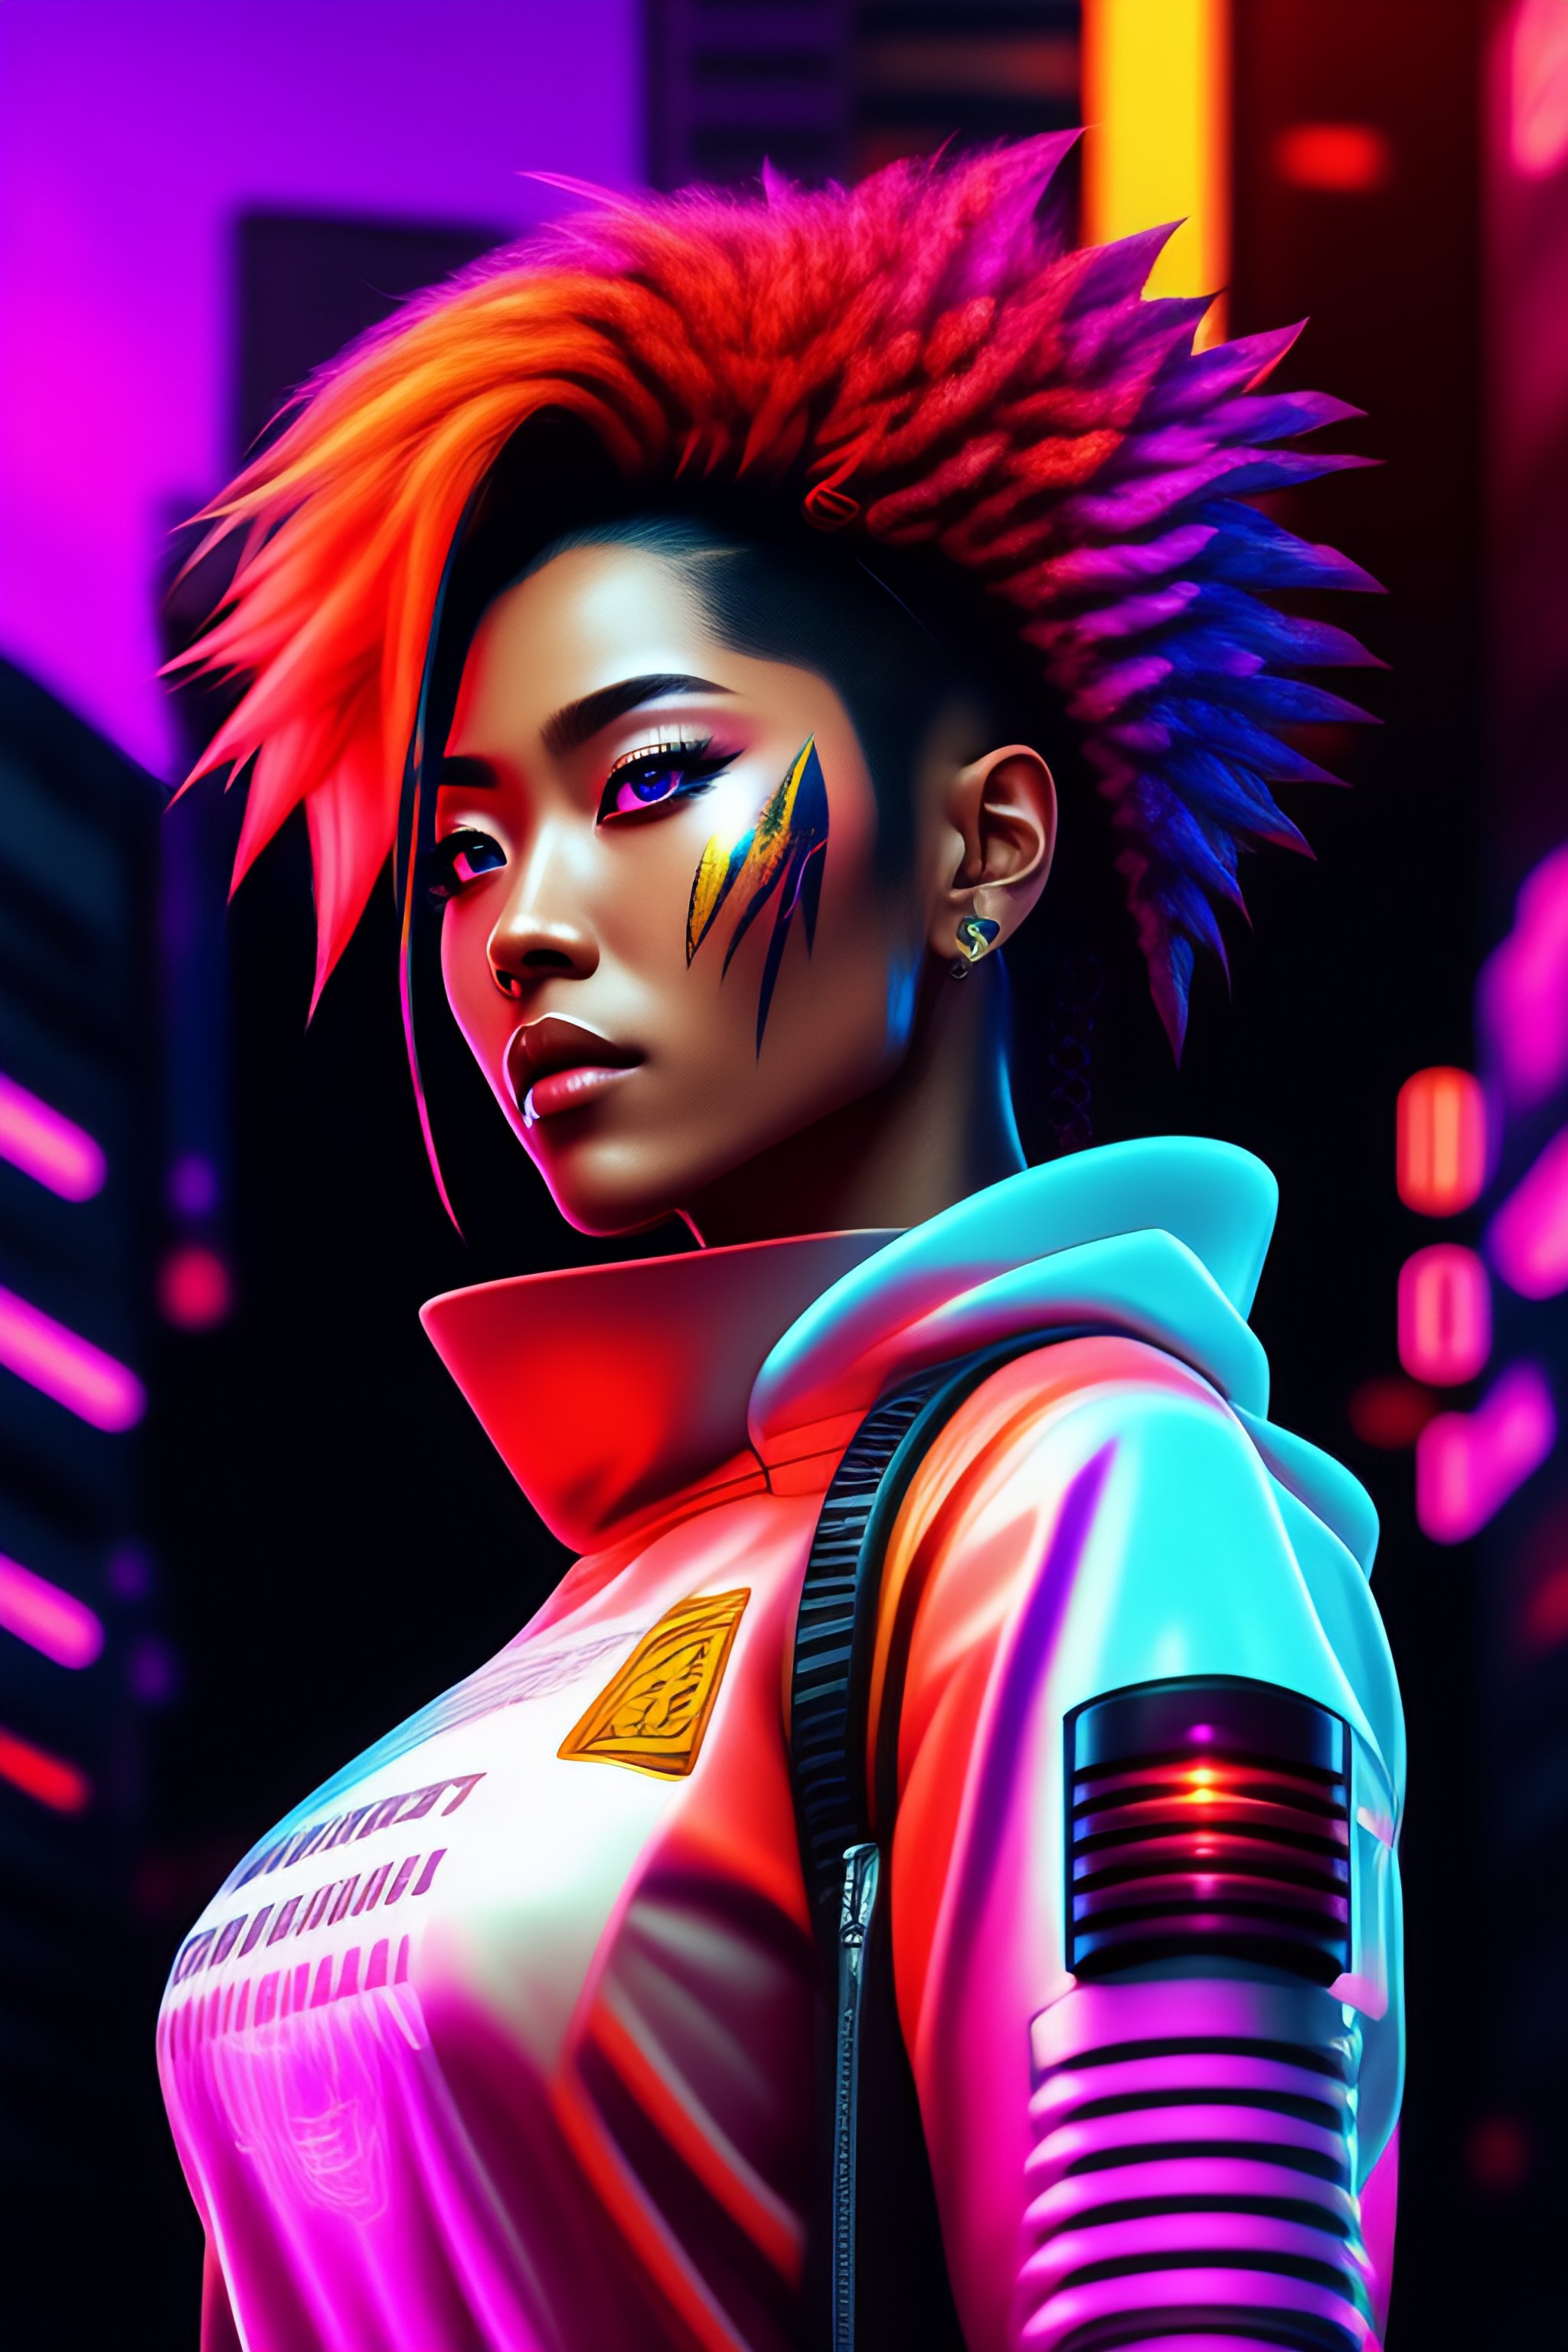 Lexica - Cyberpunk 2077 Edgerunner, Cyberpunk coloured Ink drawing ...